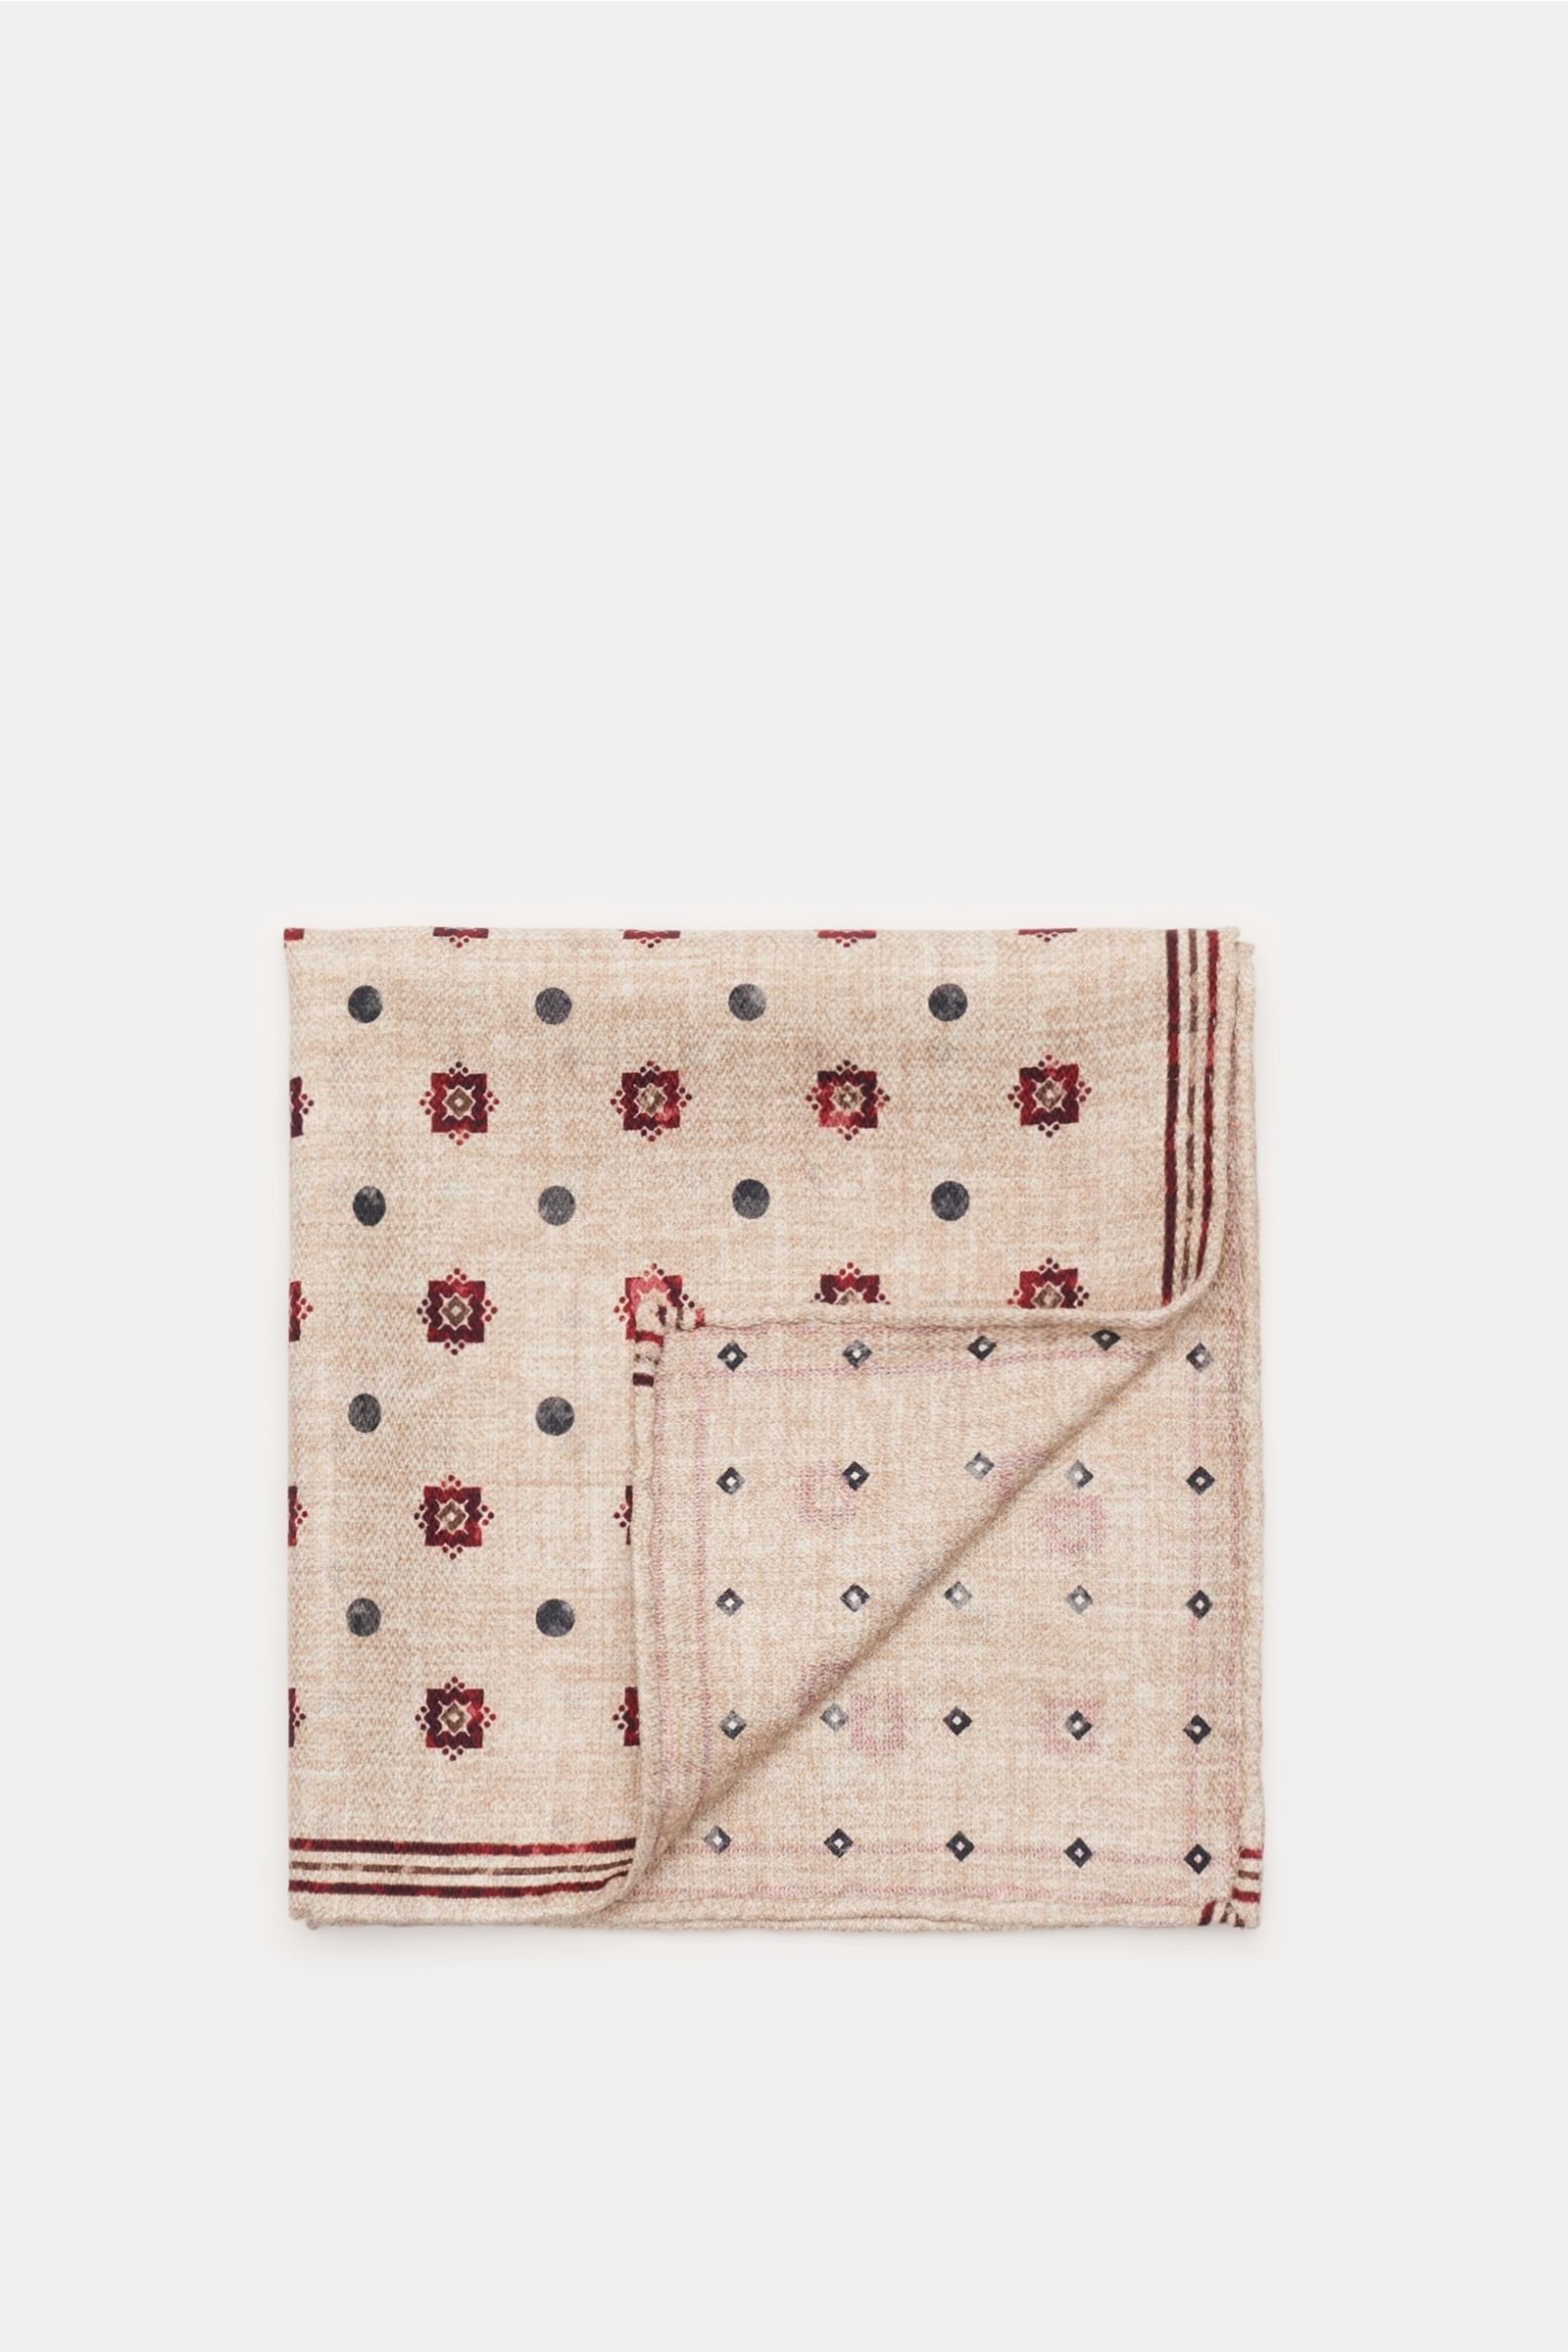 Pocket square beige/burgundy patterned